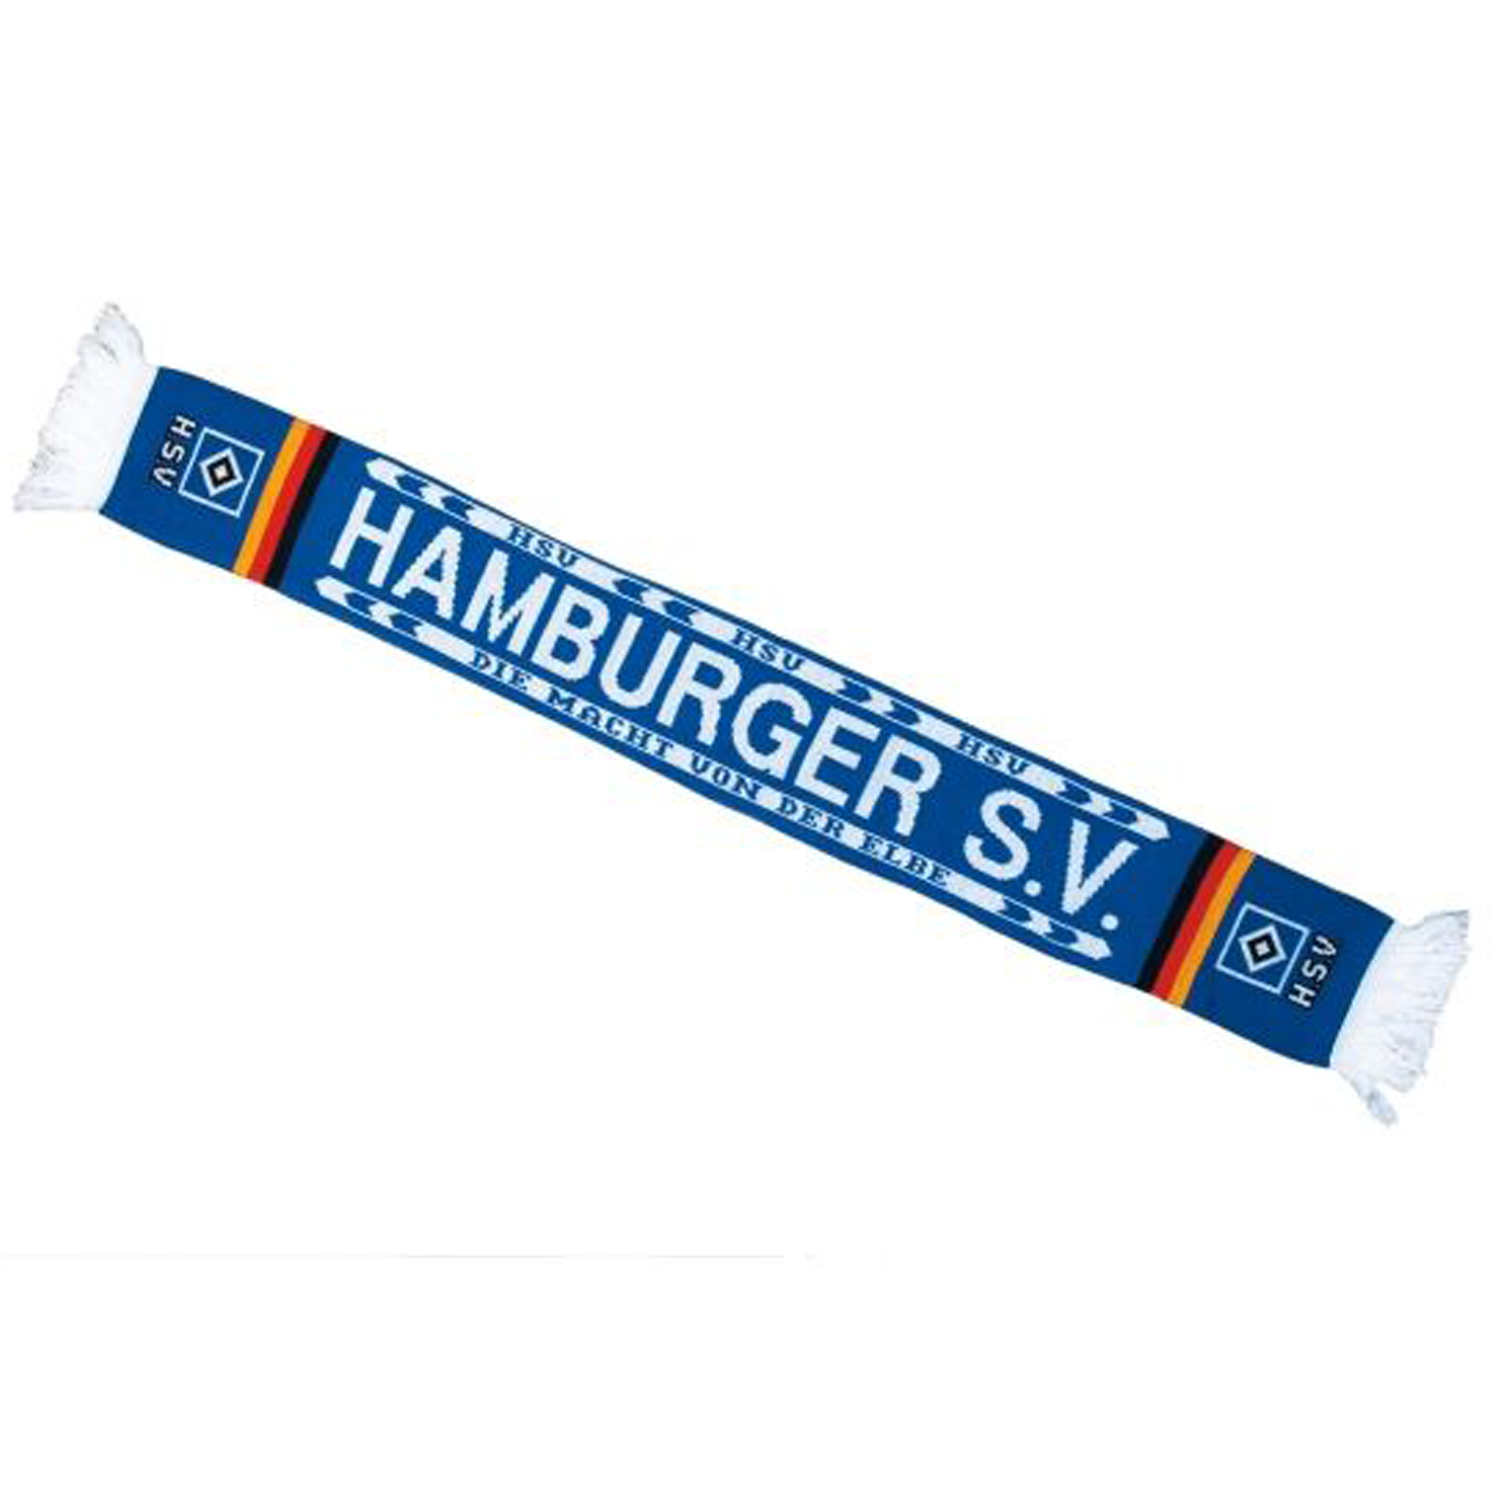 Hamburger SV Schal "Macht von der Elbe" - blau